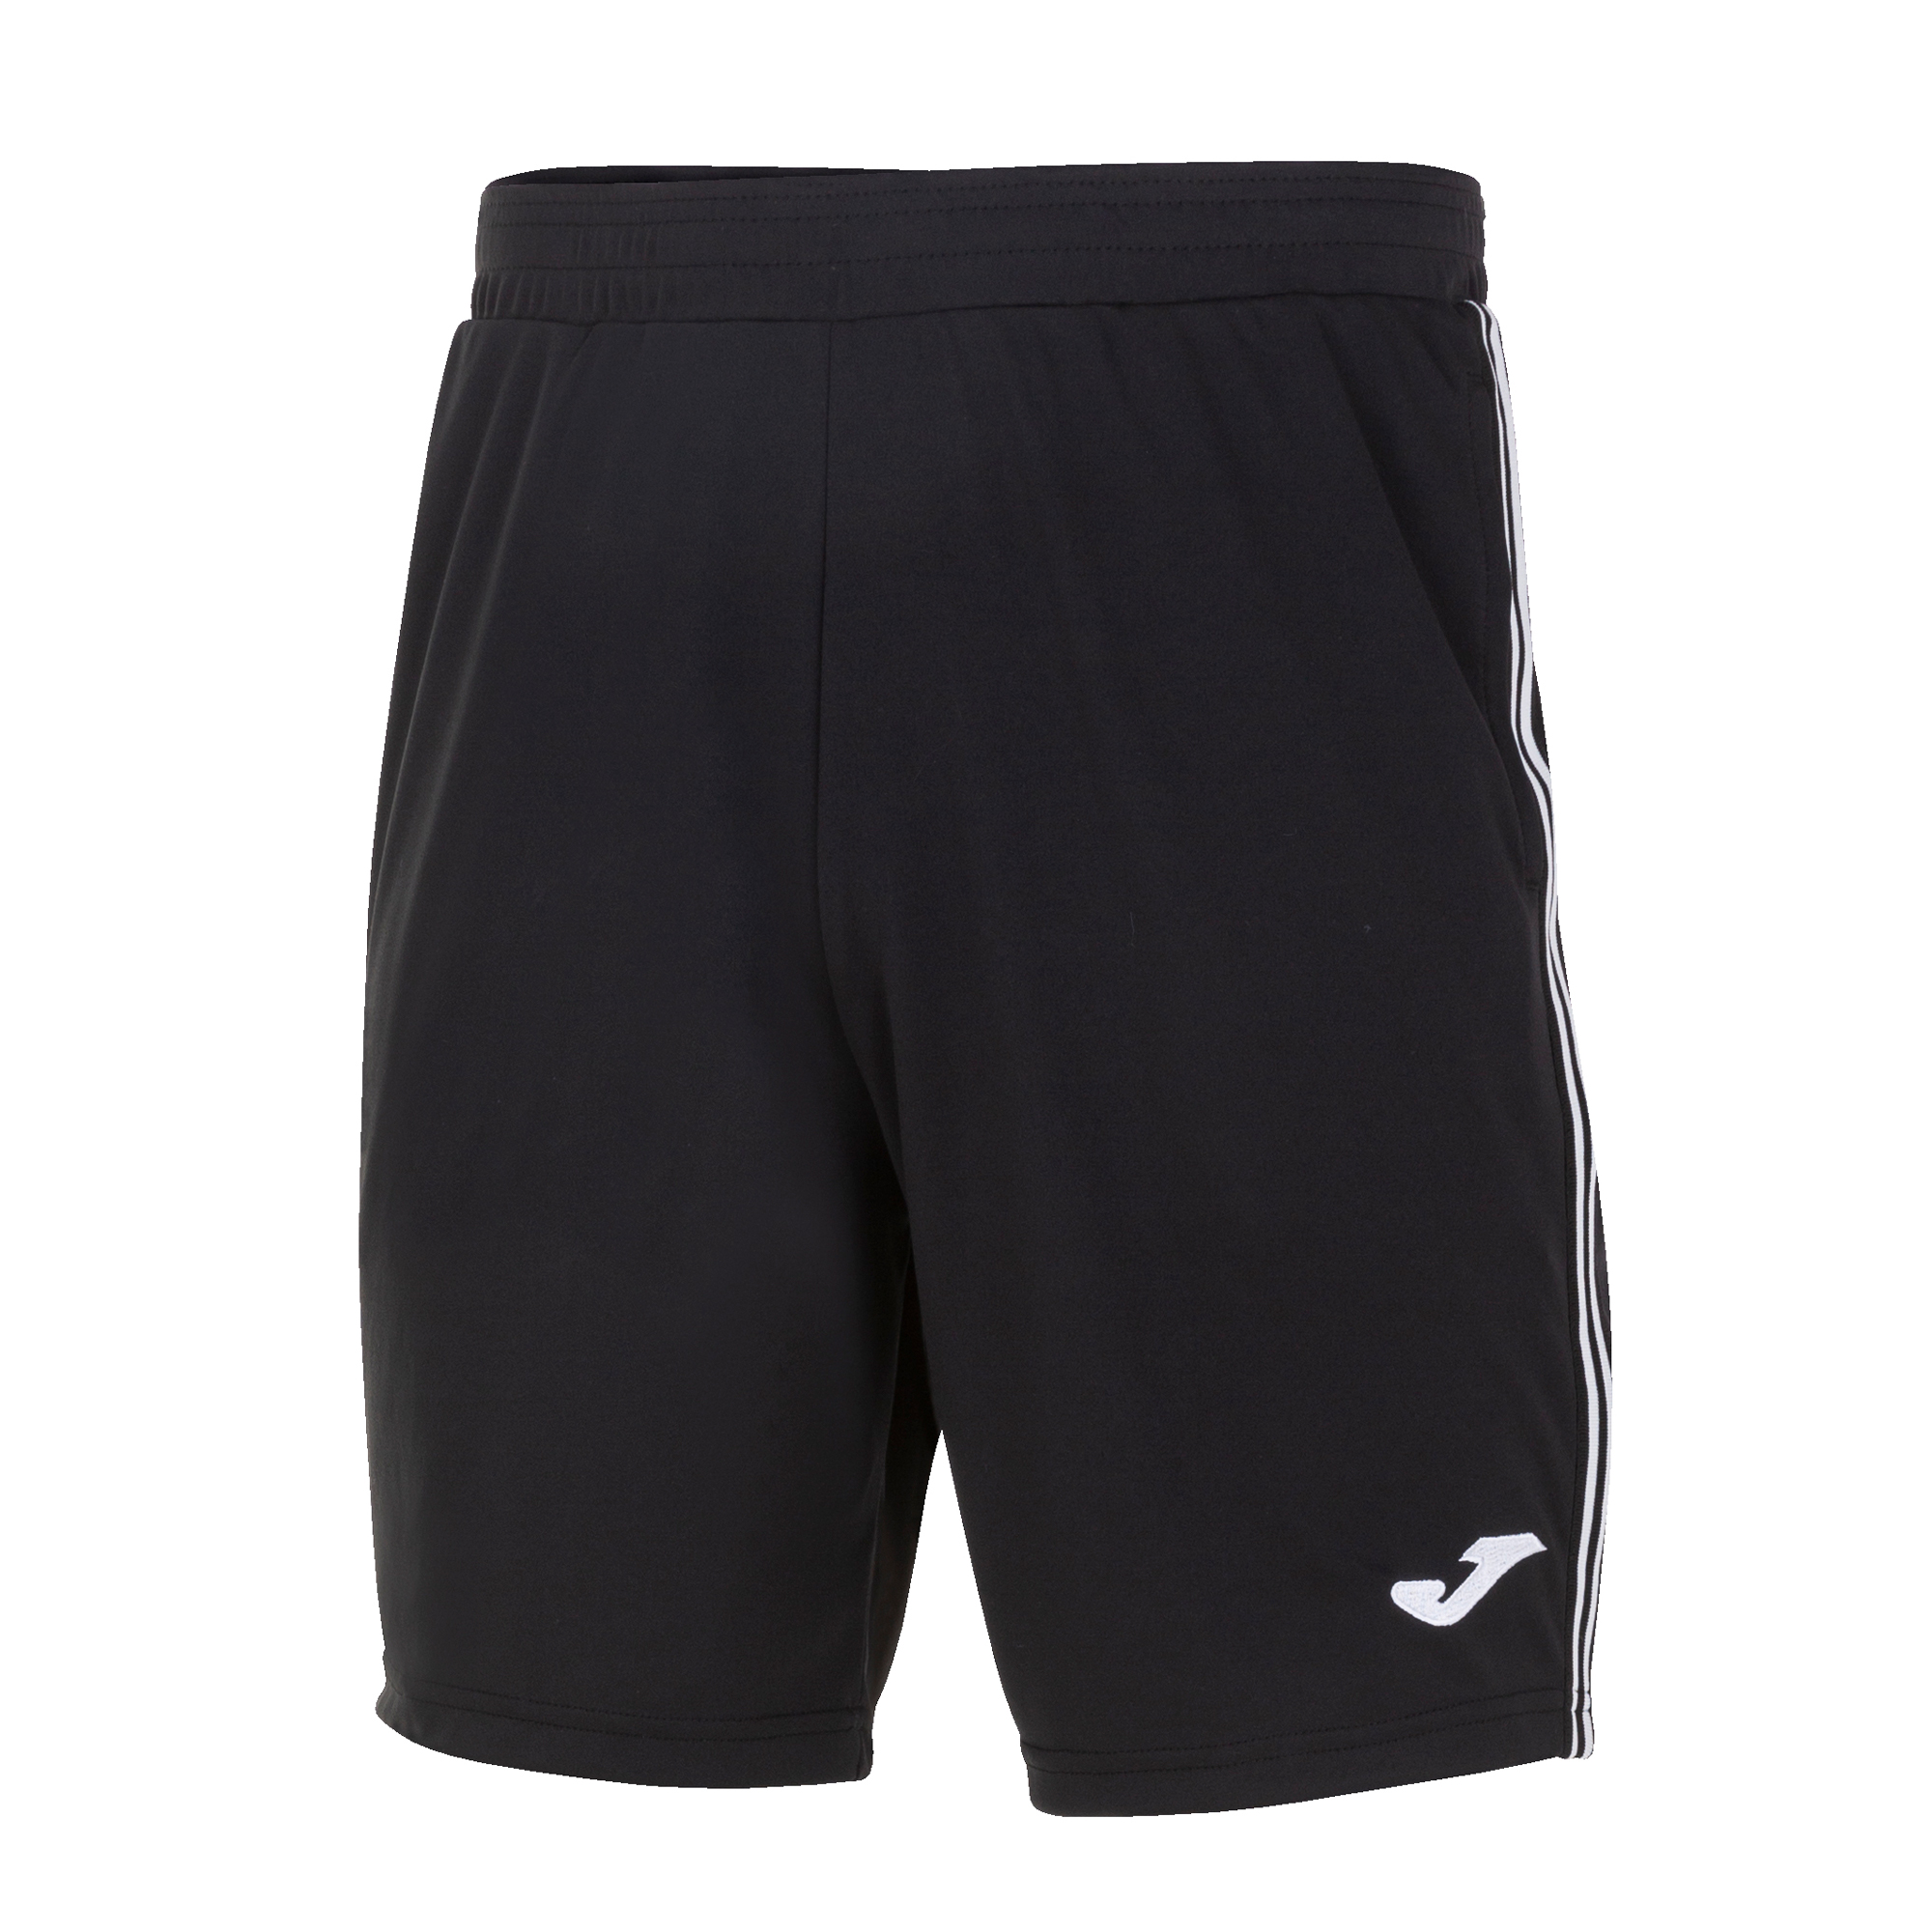 Волейбольные шорты мужские Joma CLASSIC BERMUDA Черный/Белый